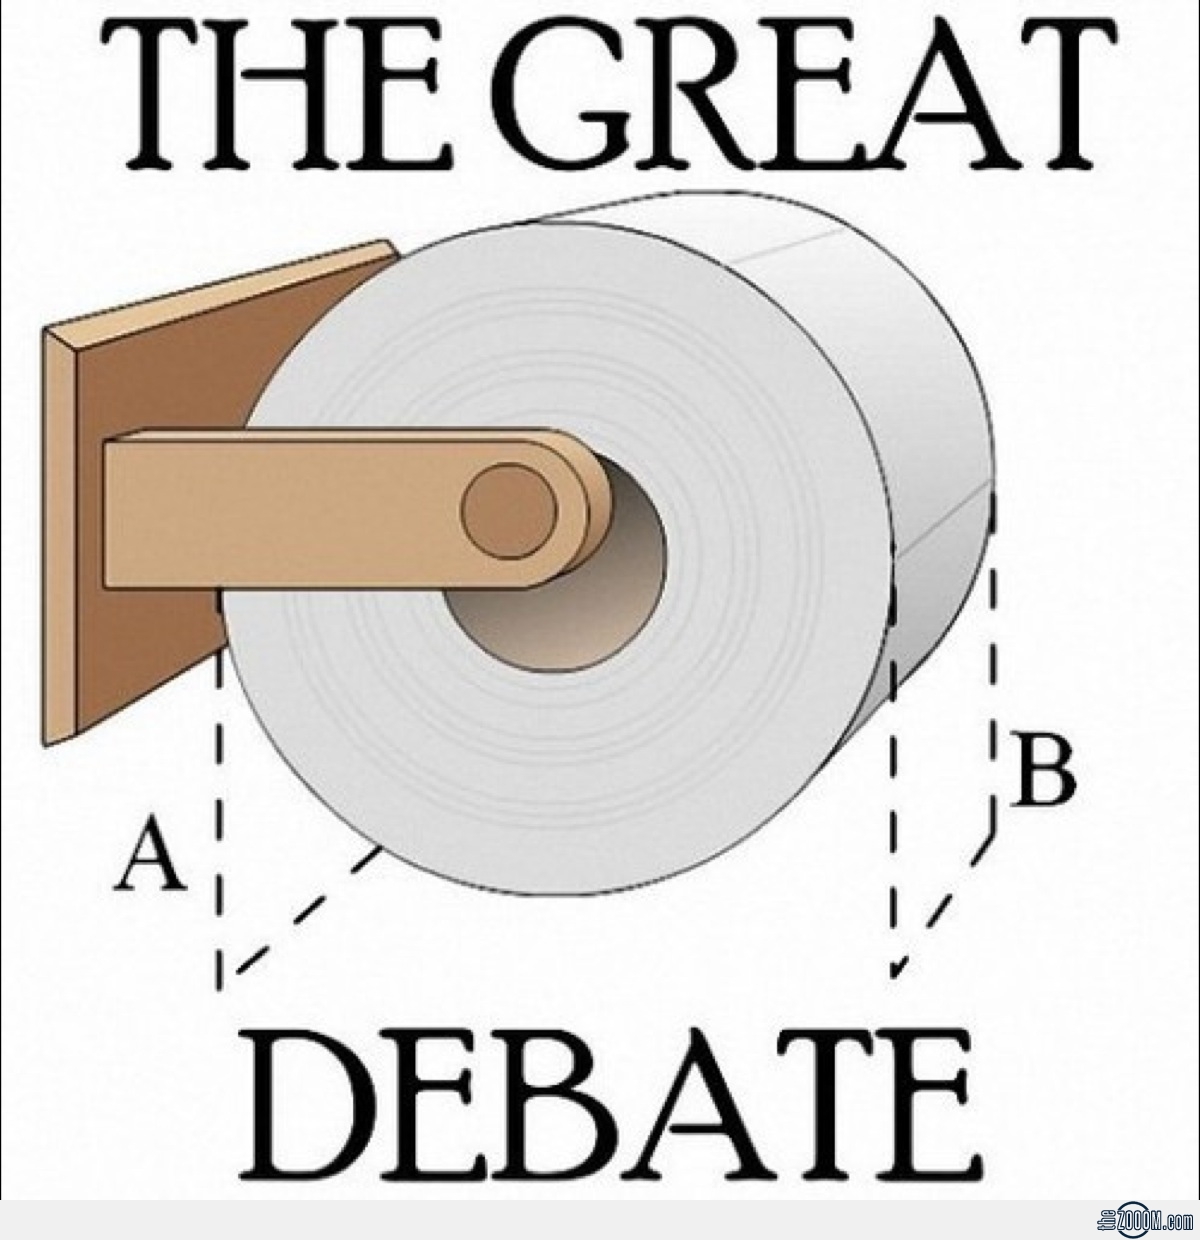 Toilet-Paper-Great-Debate.jpg